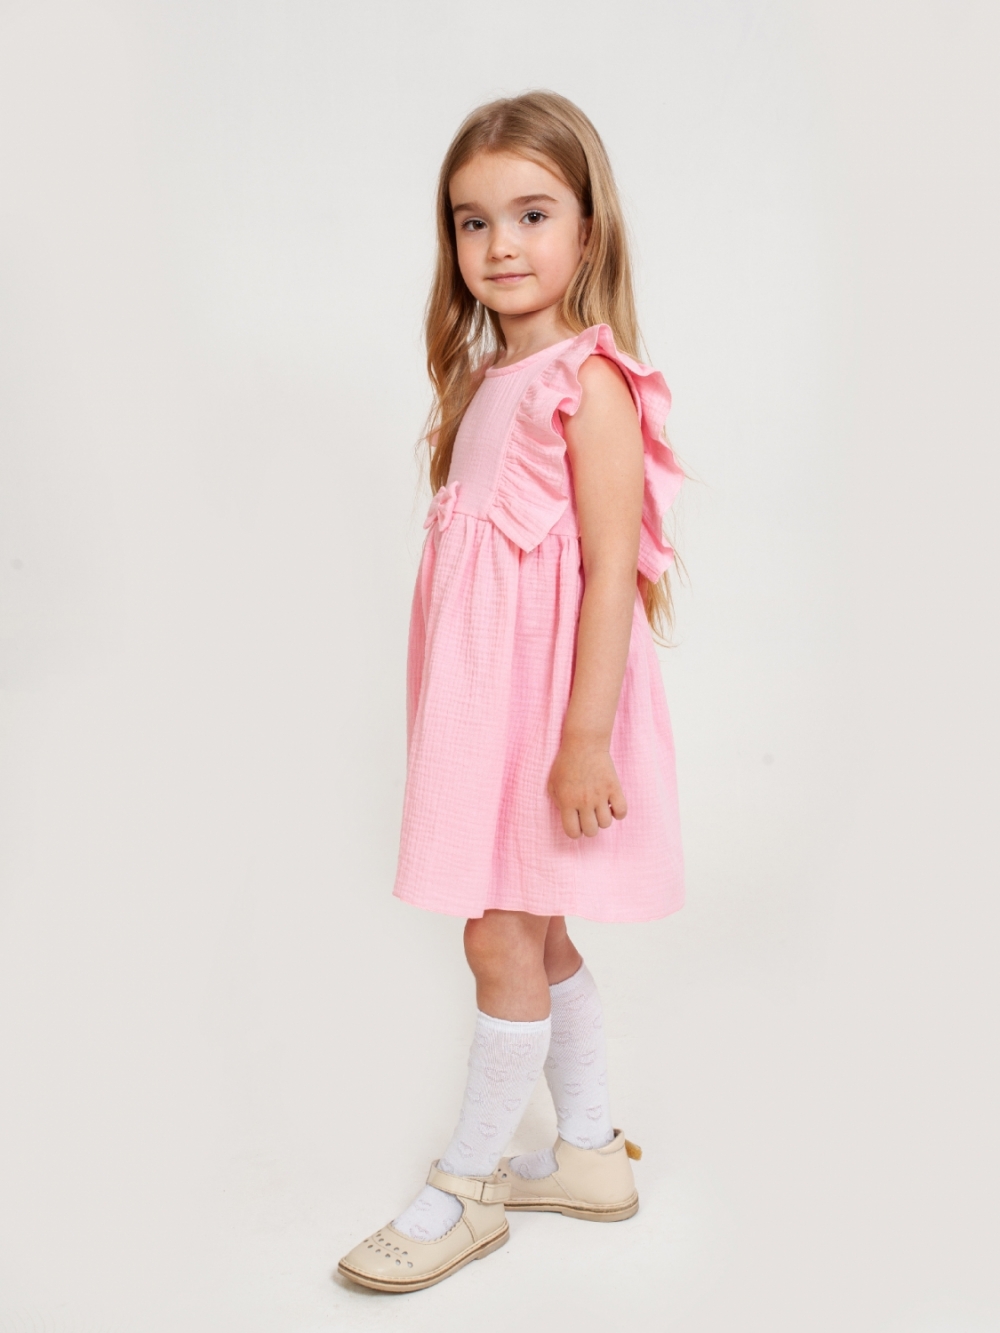 322-Р. Платье из муслина детское, хлопок 100% розовый, р. 98,104,110,116